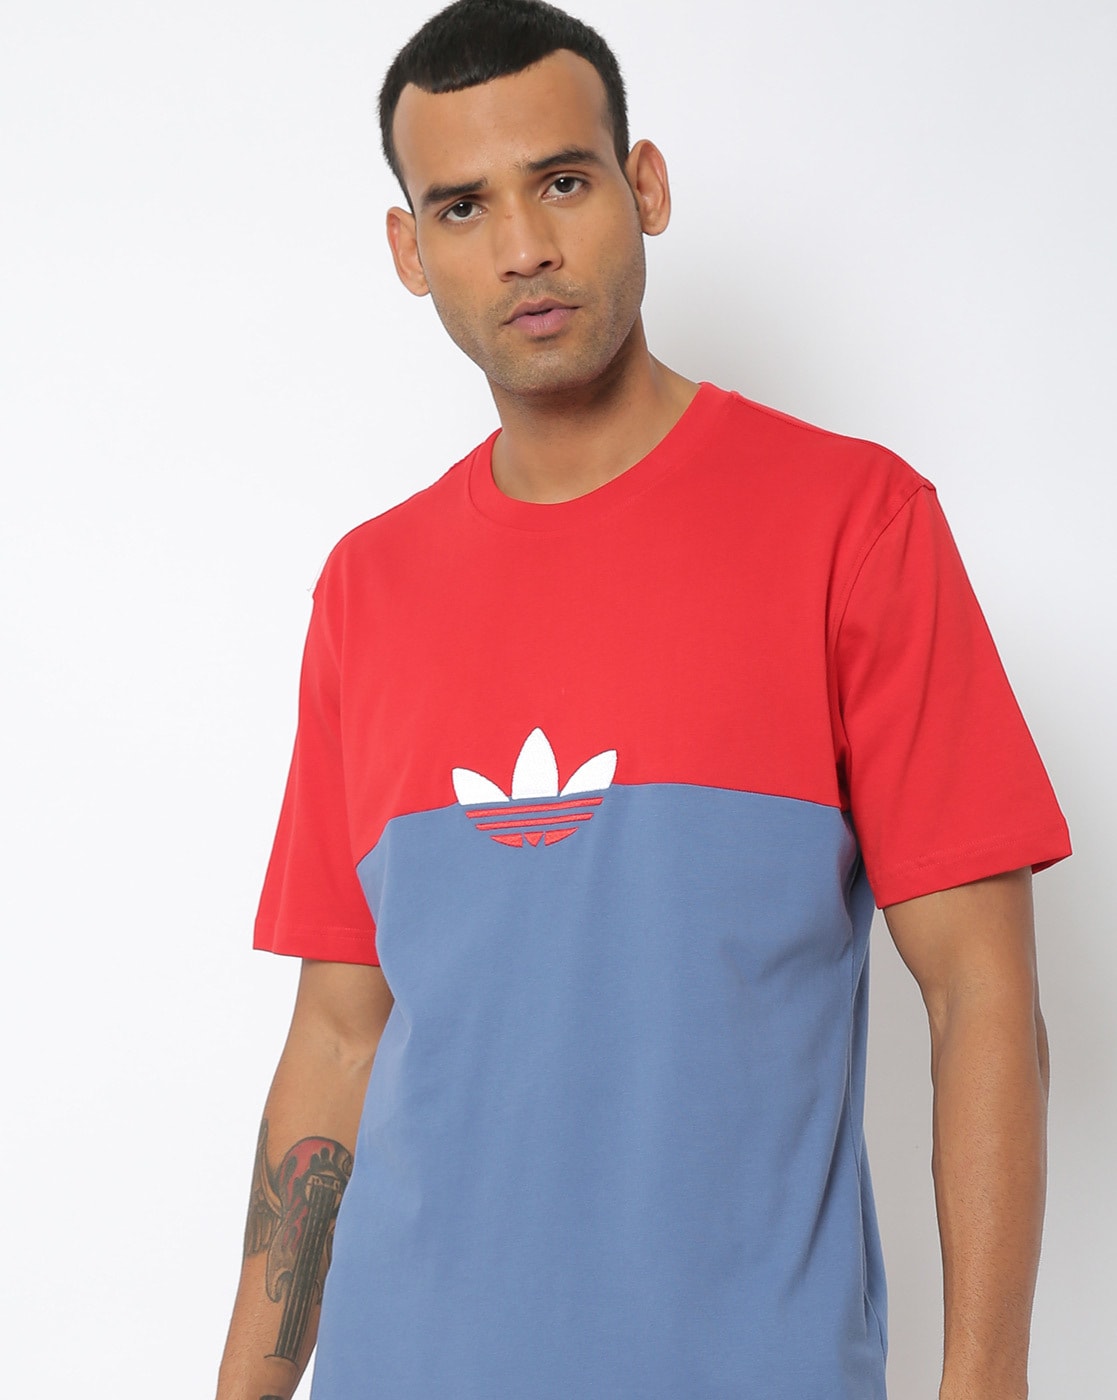 & Red Tshirts for Men Adidas Originals Online |